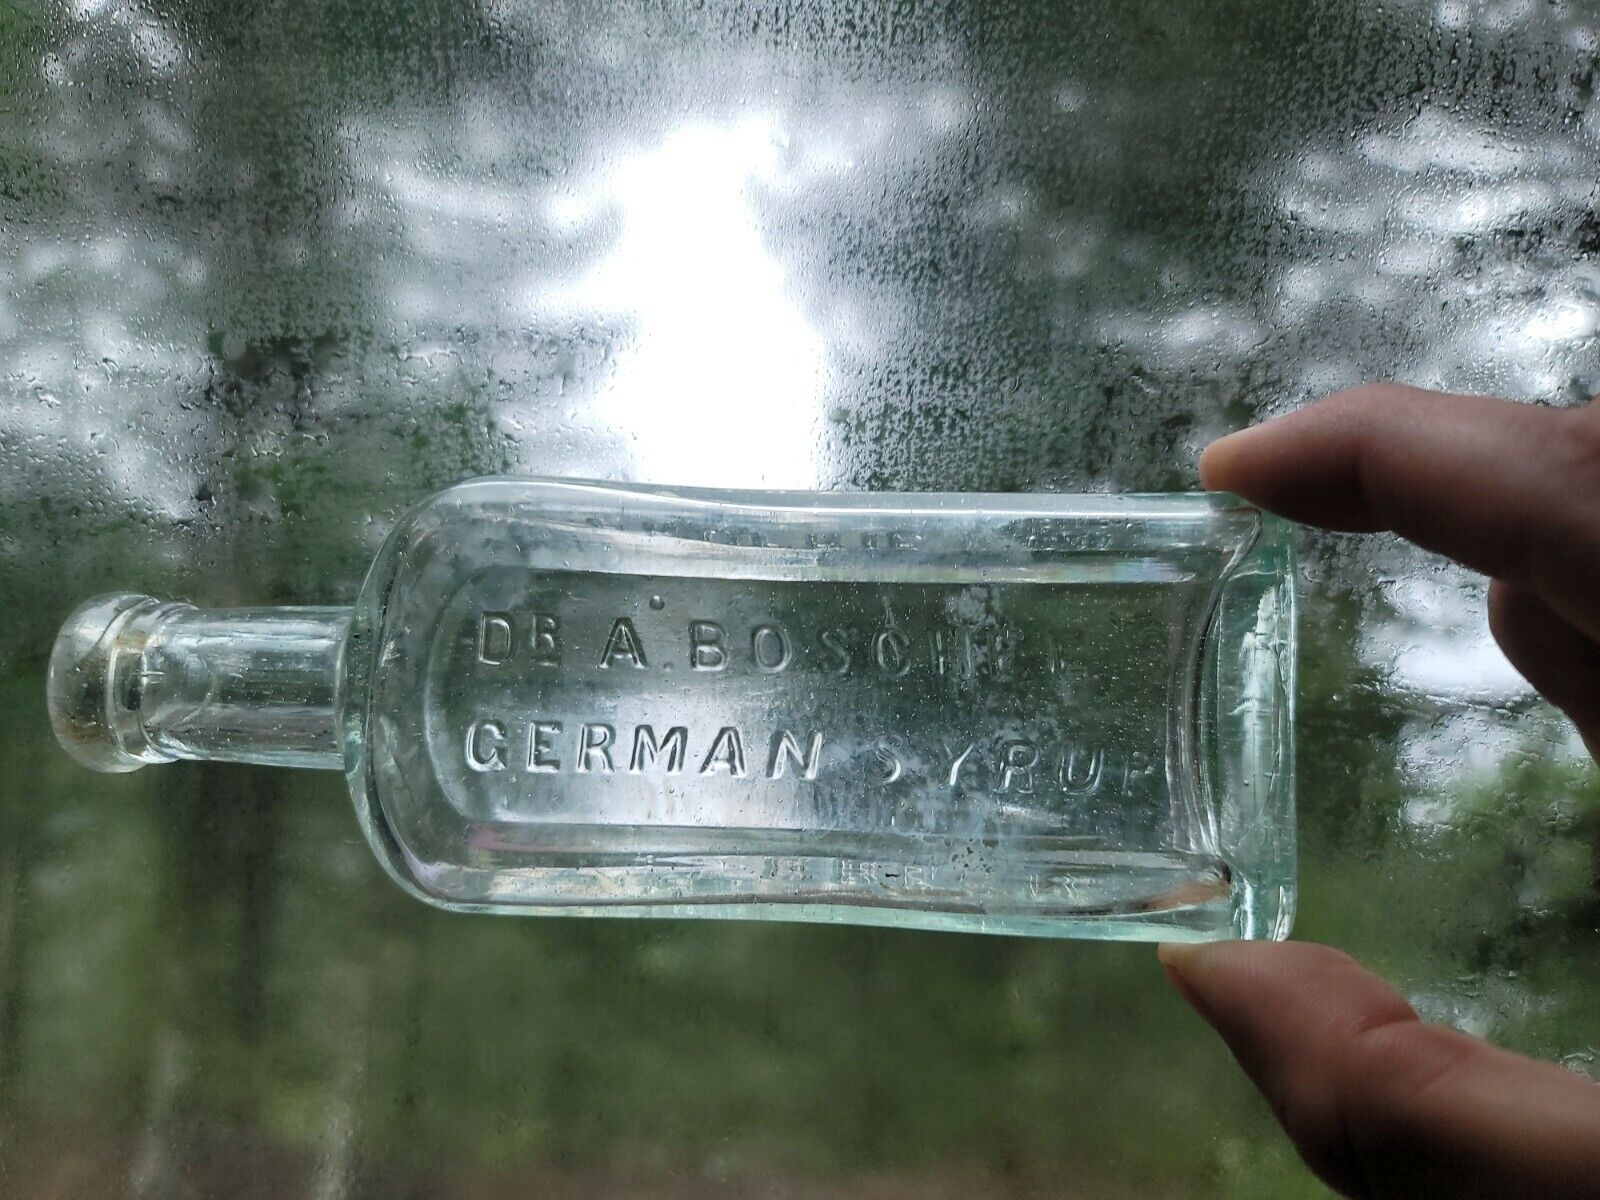 Old Dr. A. Boschee\'s German Syrup Bottle - Antique Flavoring Bottle